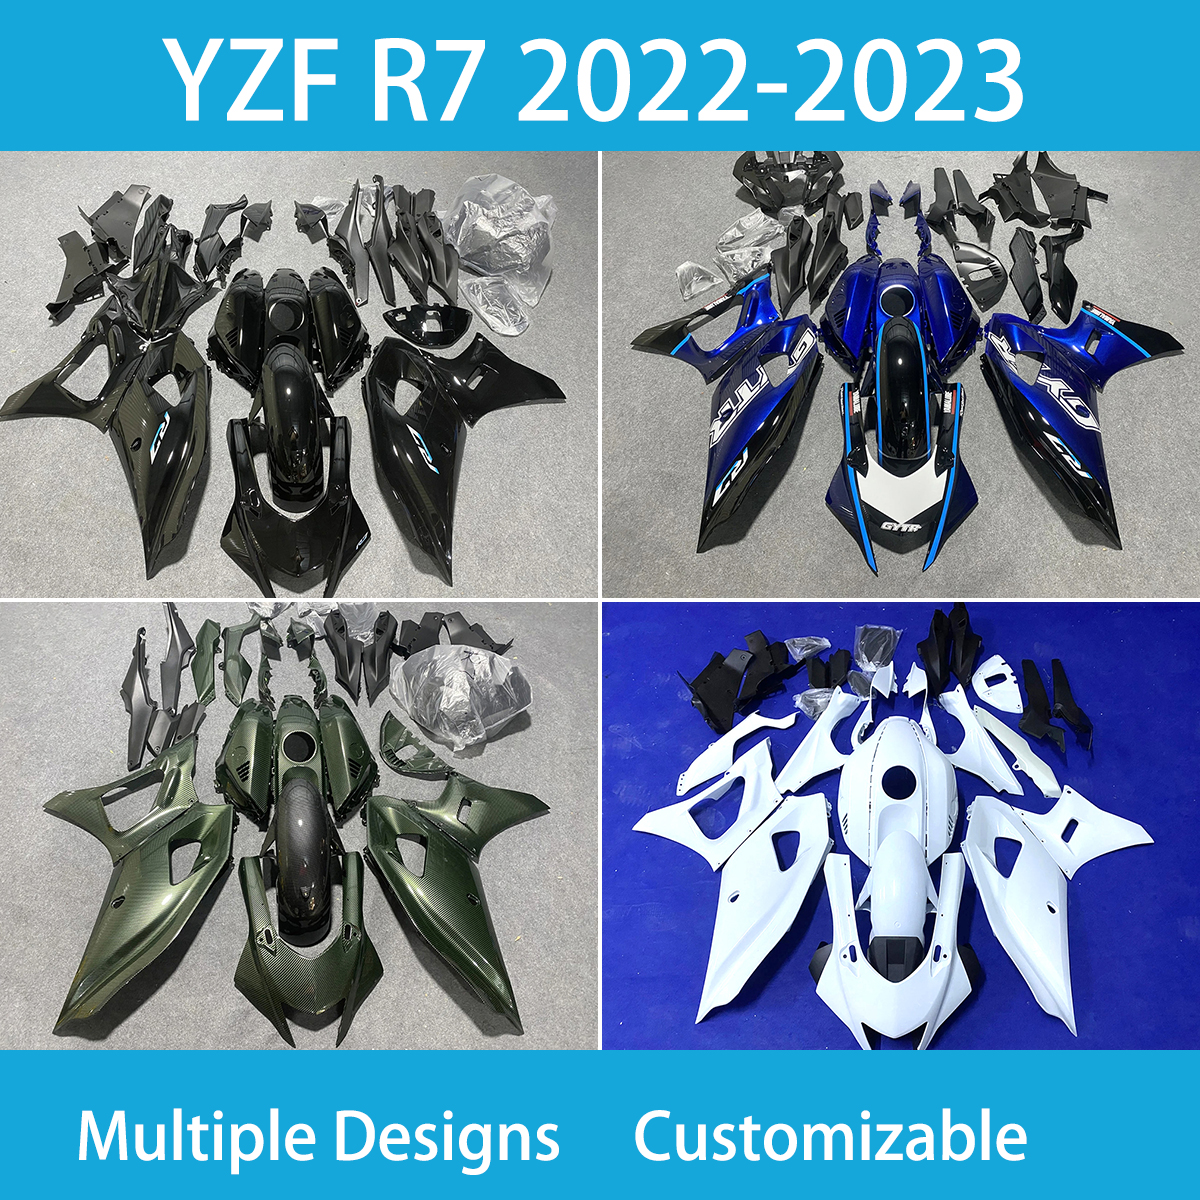 Kit di carenatura di alta qualità per Yamaha YZFR7 2022-2023 ANNO 100% MAVOLA IN AIEZIONE MAPPAGGIO MOTO A MOTORE NERO BLACO CARENGI FULLIZIONI SET YZF R7 22 23 anni BODYWWORT PLASICA ABS